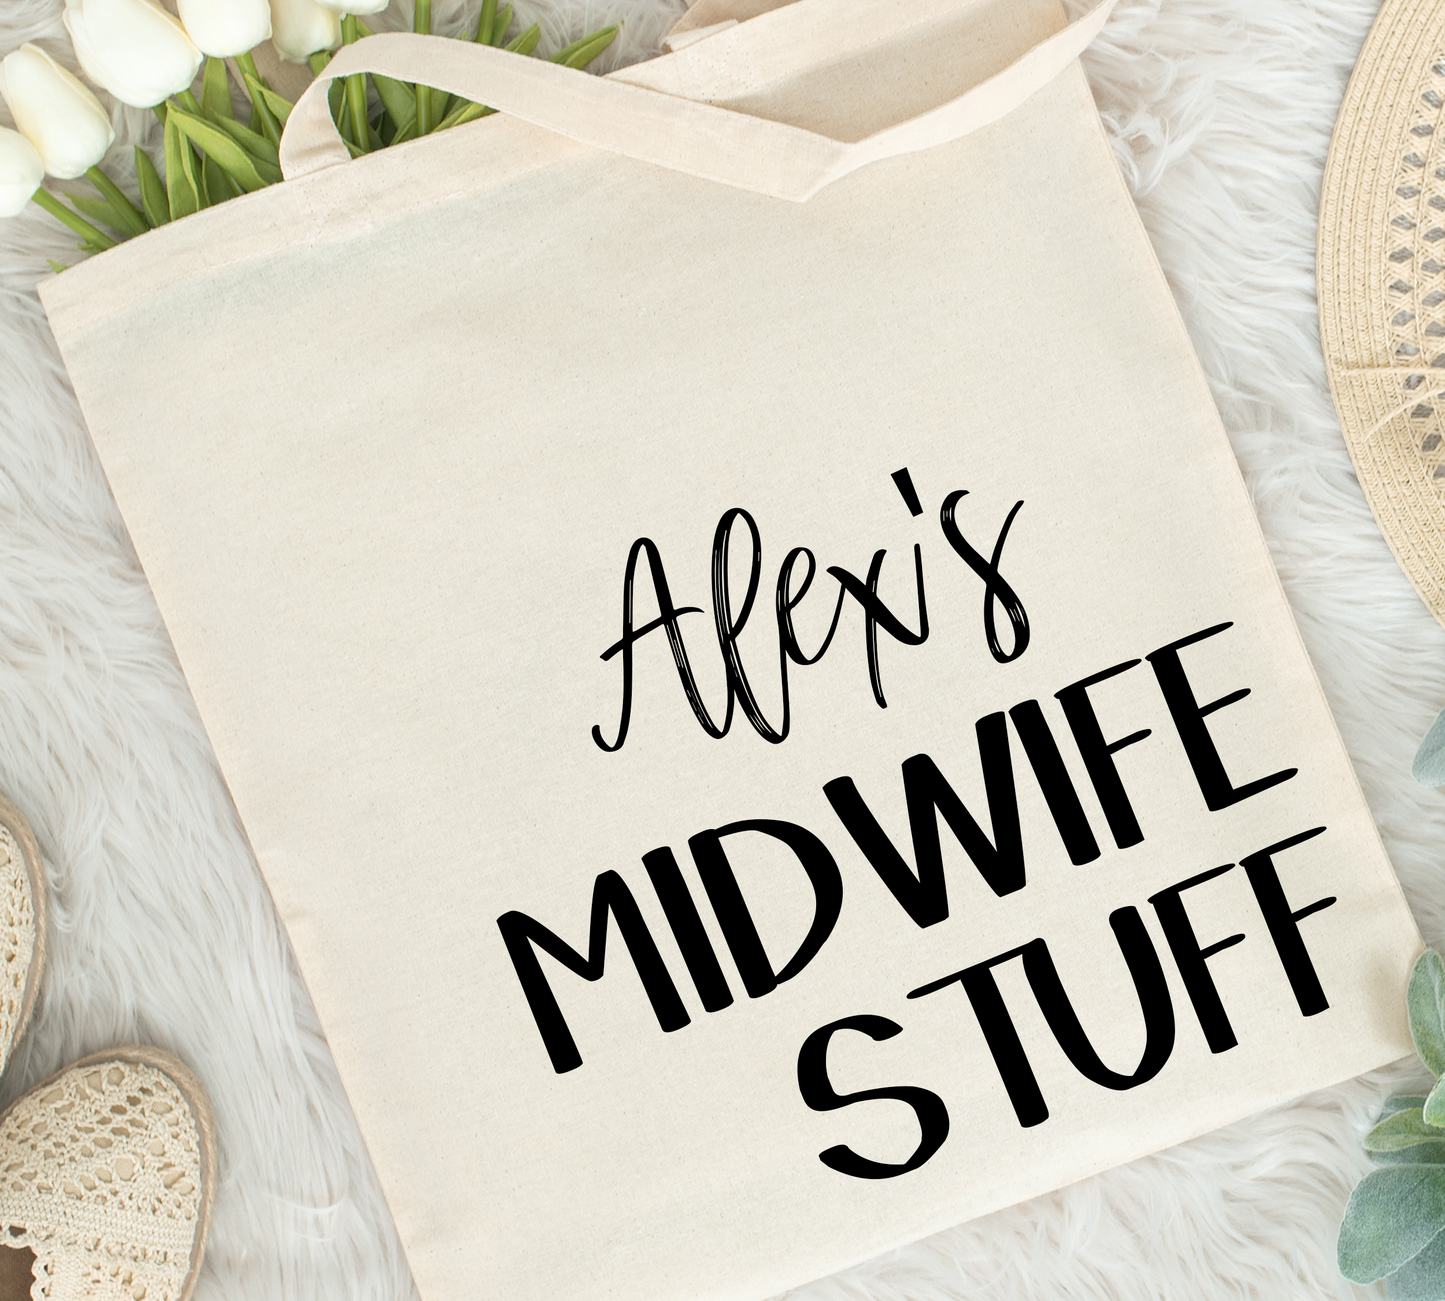 Midwife Stuff Tote Bag